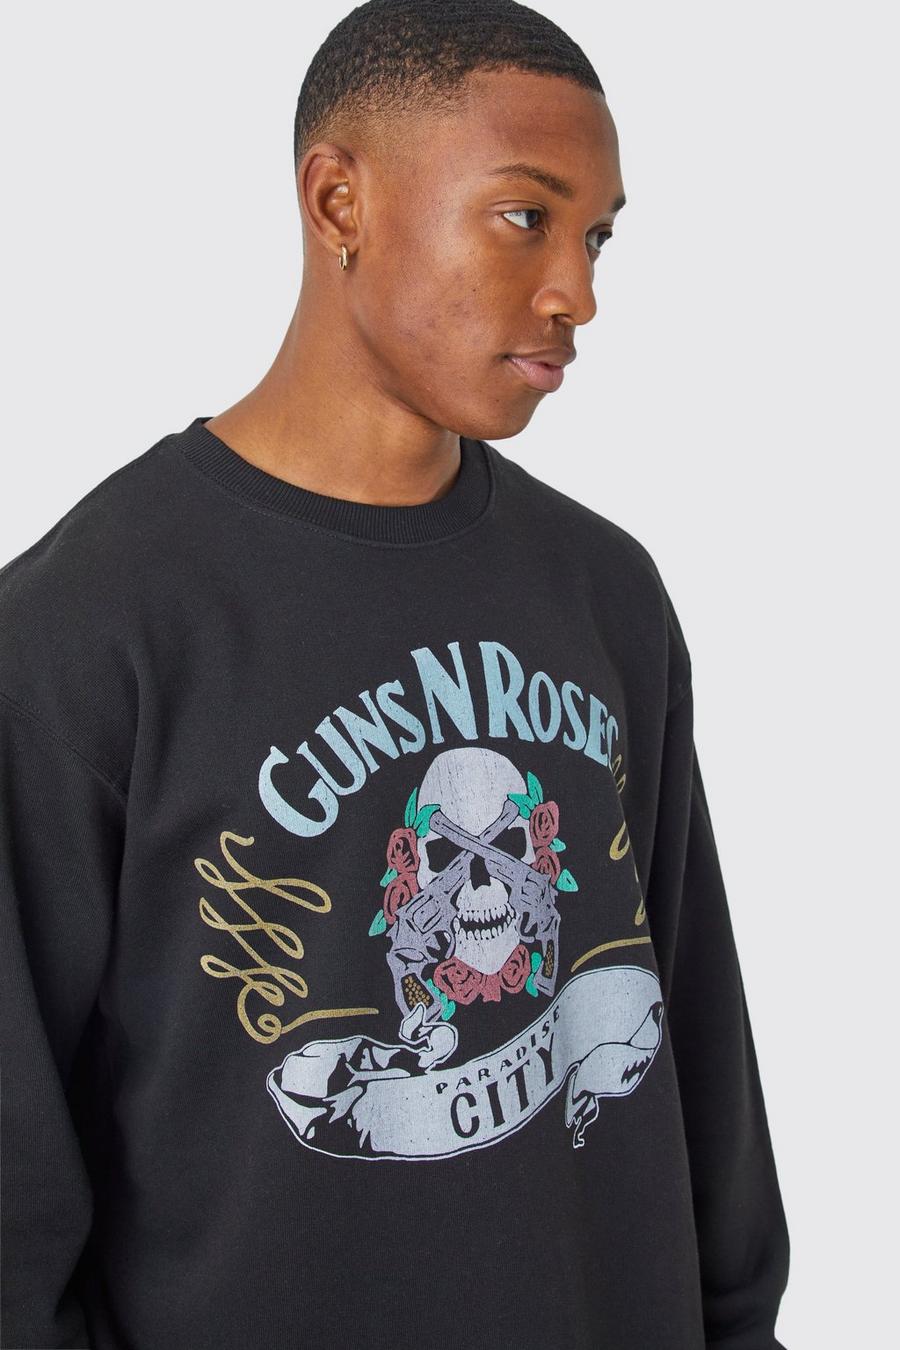 Black Oversized Guns N Roses Skull City License Sweatshirt